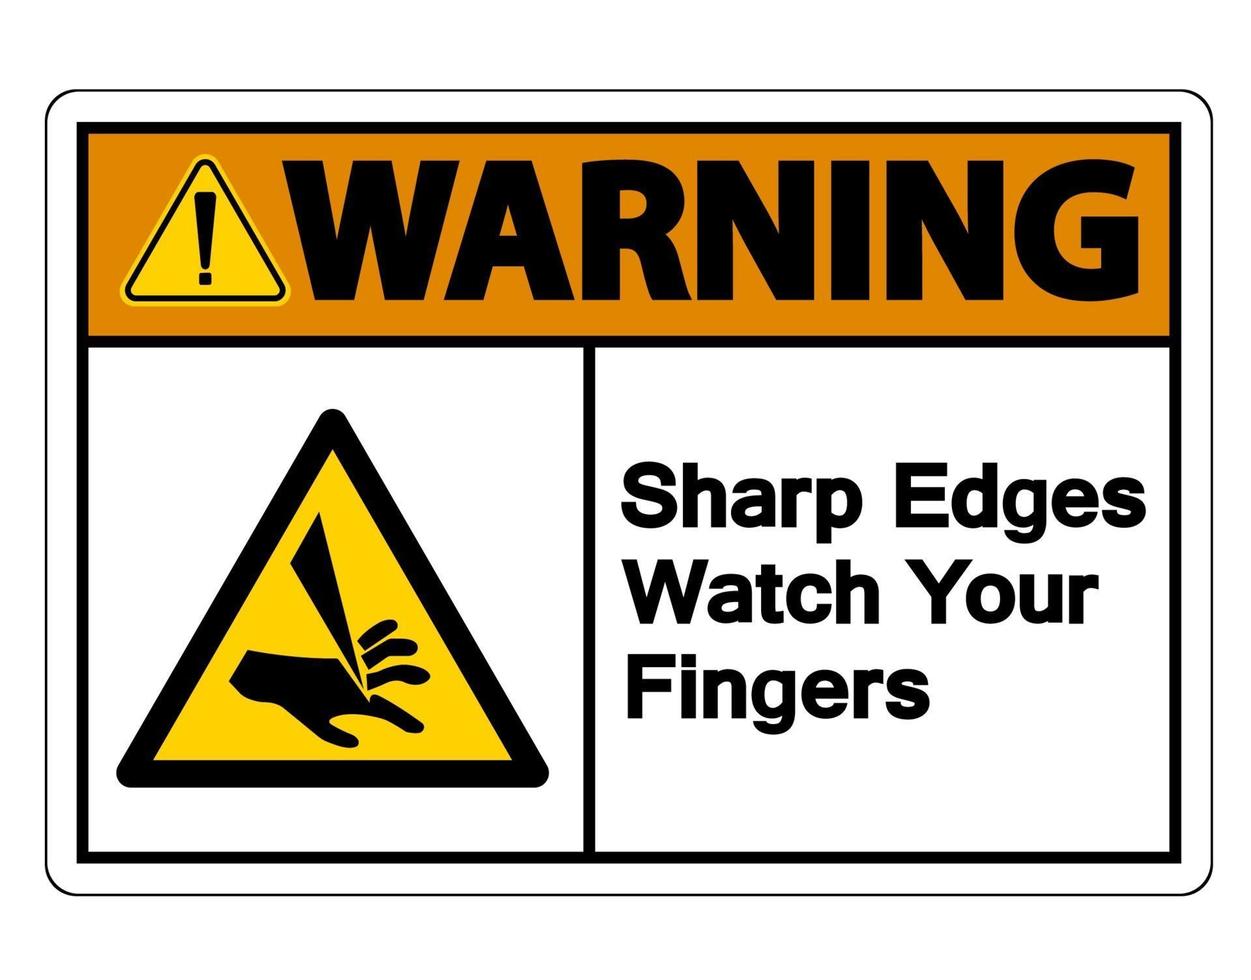 Waring bords tranchants regardez votre signe de symbole de doigts sur fond blanc vecteur